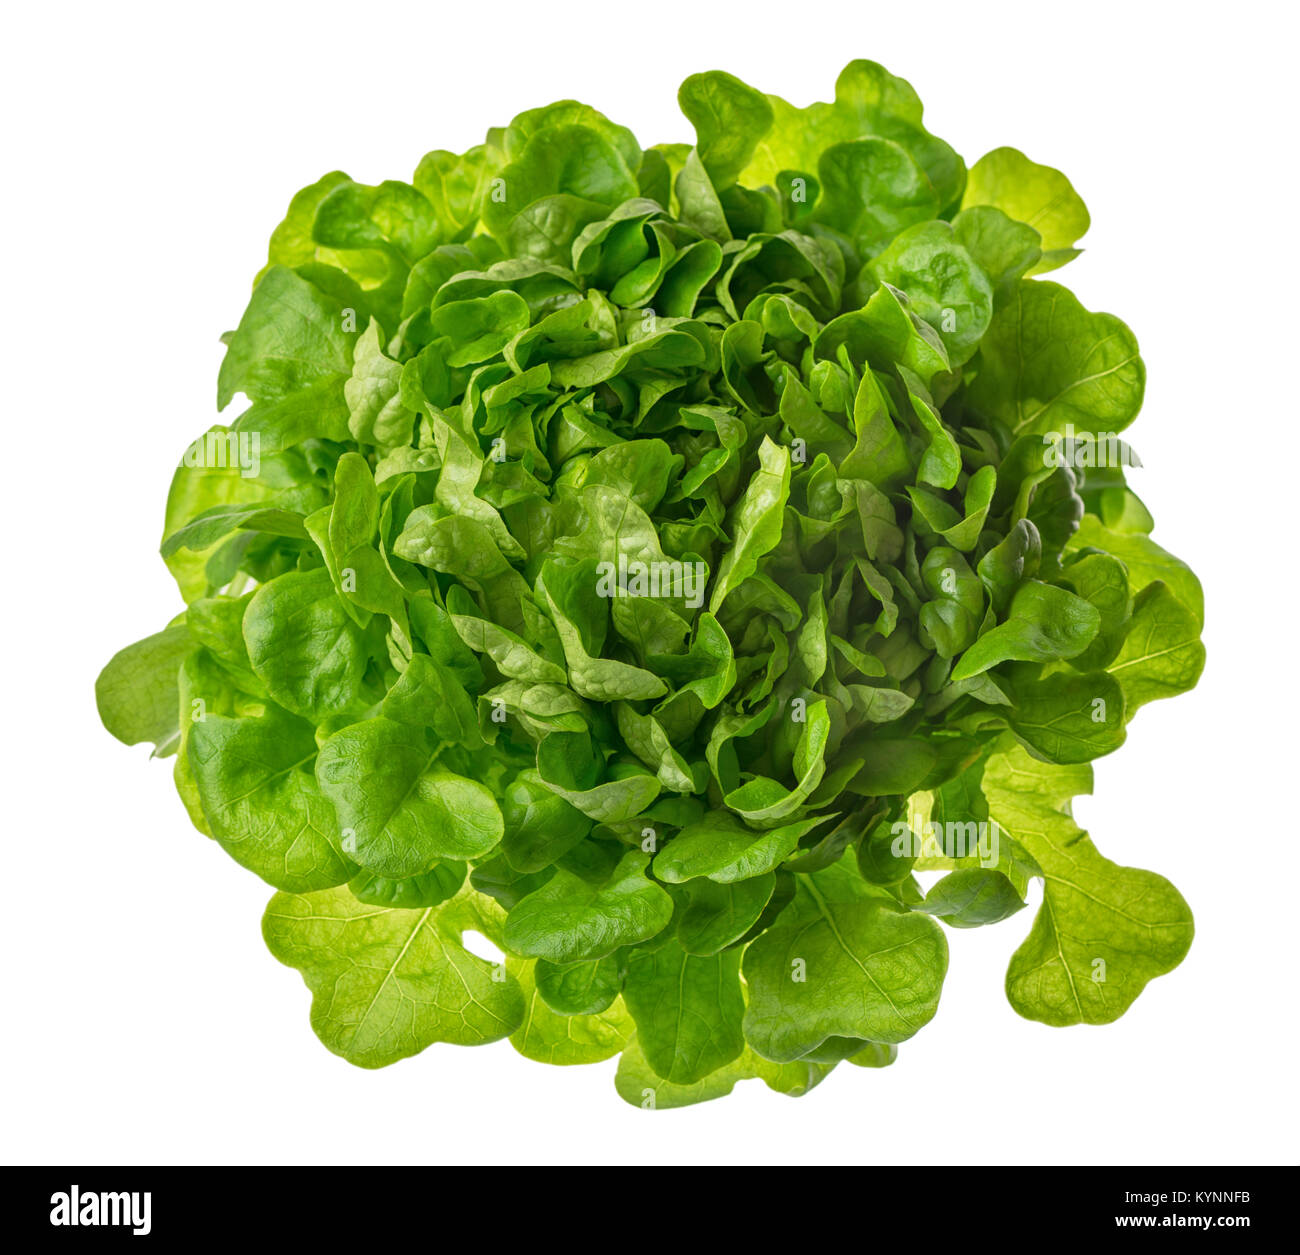 La laitue ou salade vert tête photo isolé sur fond blanc, le régime alimentaire et la perte de poids saine alimentation concept detox Banque D'Images